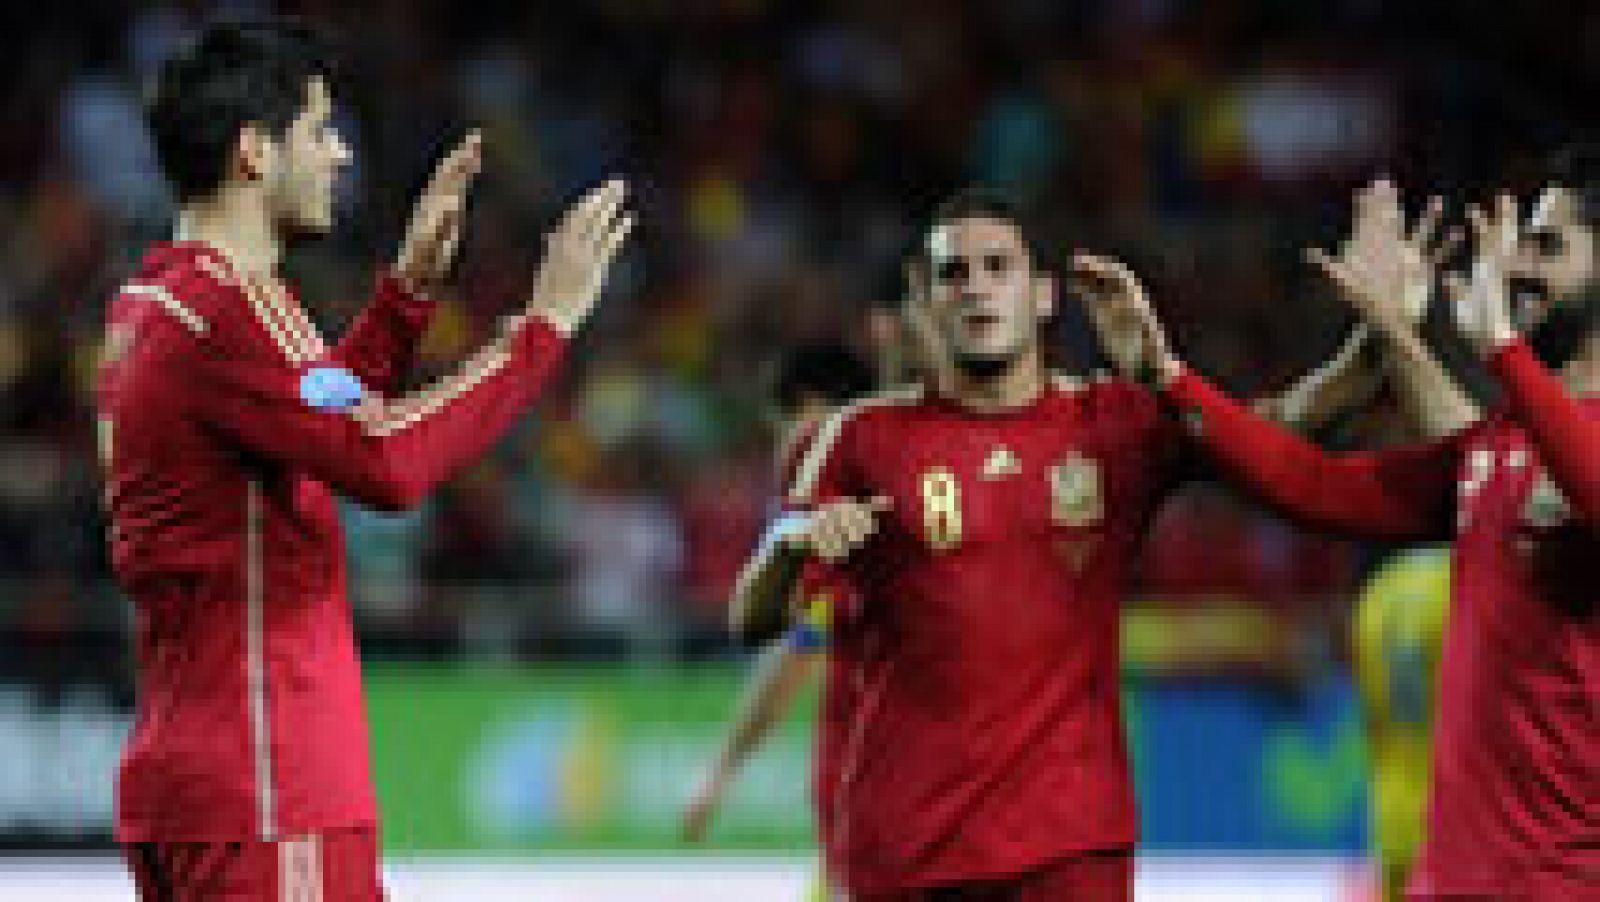 La selección española sufrió para ganar 1-0 a Ucrania, en el estreno goleador de Álvaro Morata con 'La Roja', y suma un valioso triunfo ante un rival directo en la fase de clasificación para la Eurocopa 2016 y al que ahora saca tres puntos, en un par